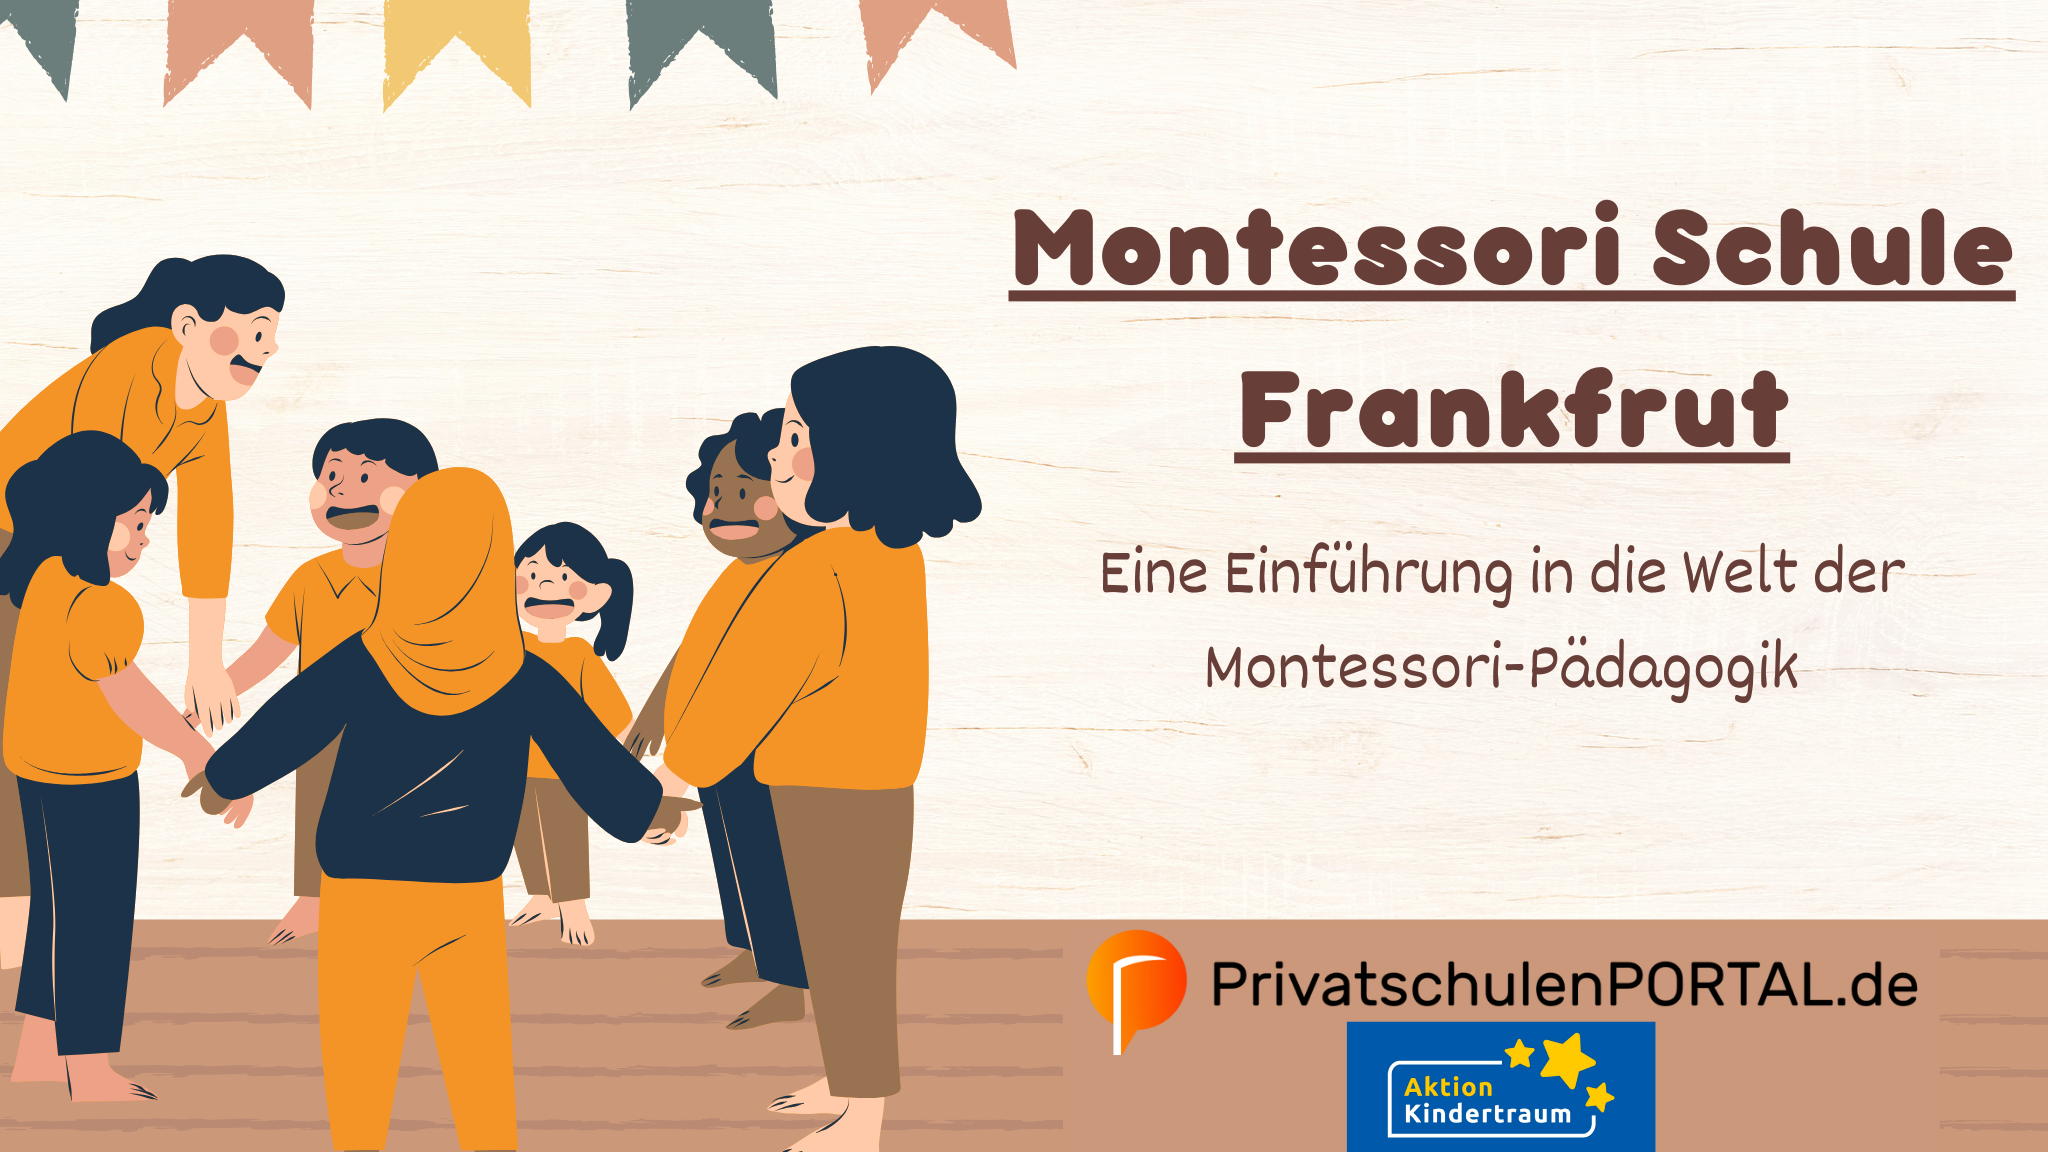 Montessori Schule Frankfurt